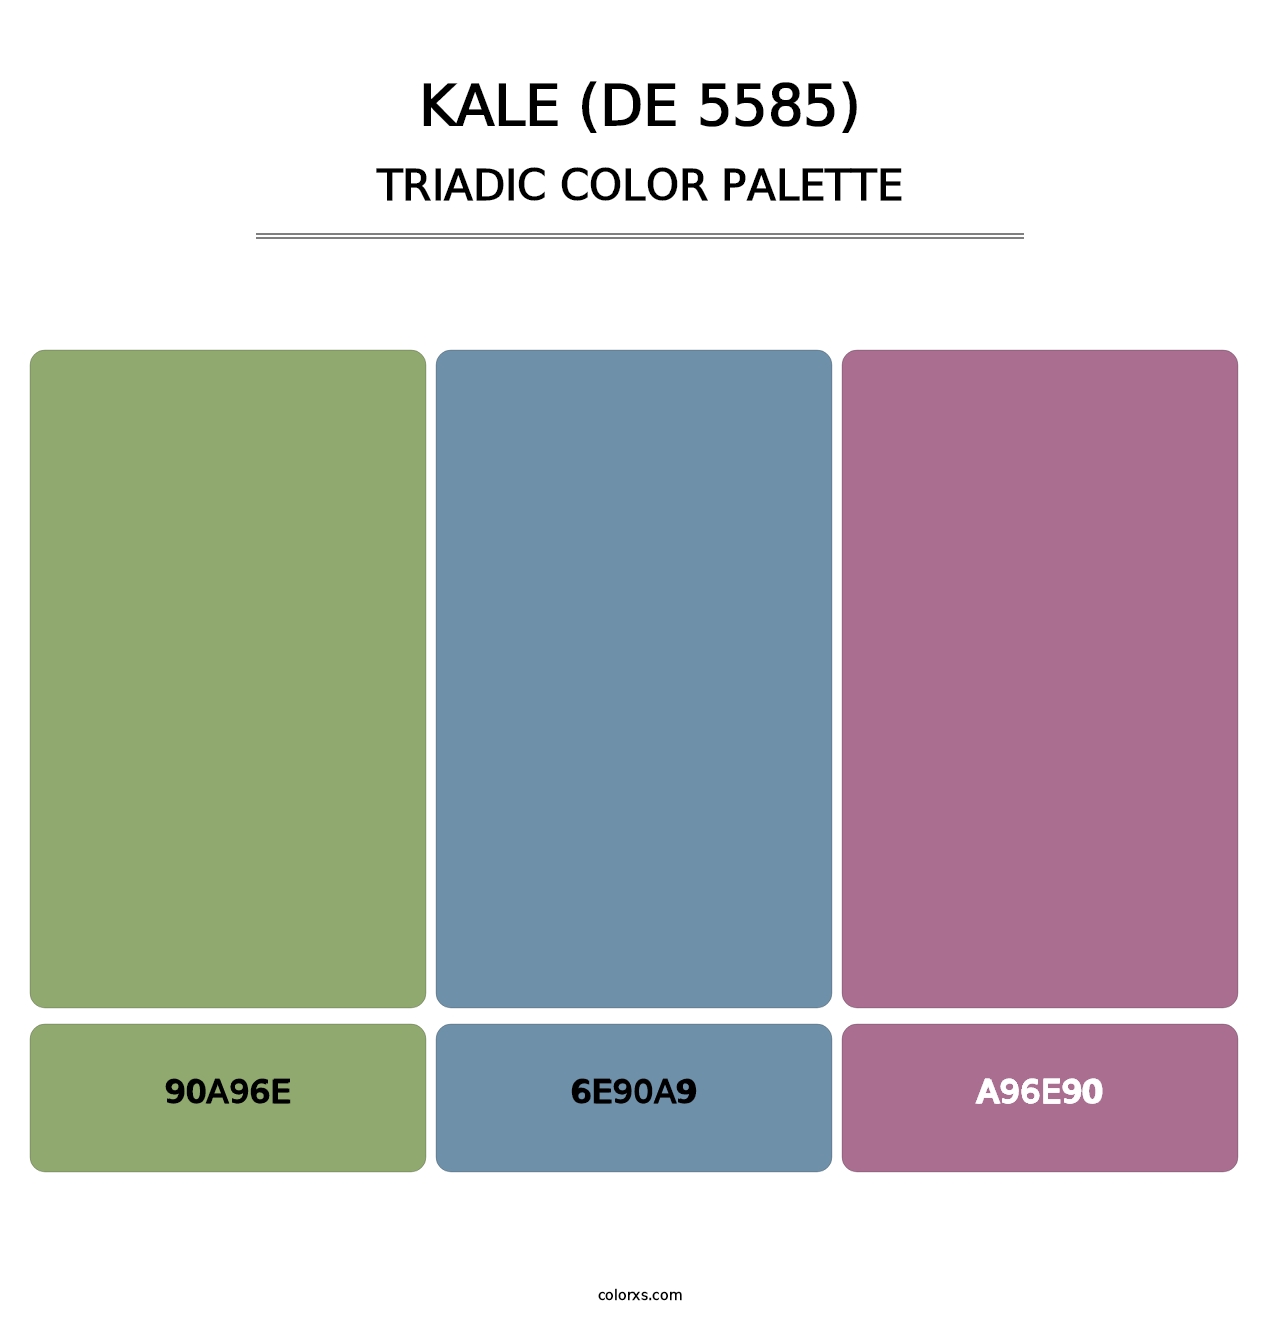 Kale (DE 5585) - Triadic Color Palette